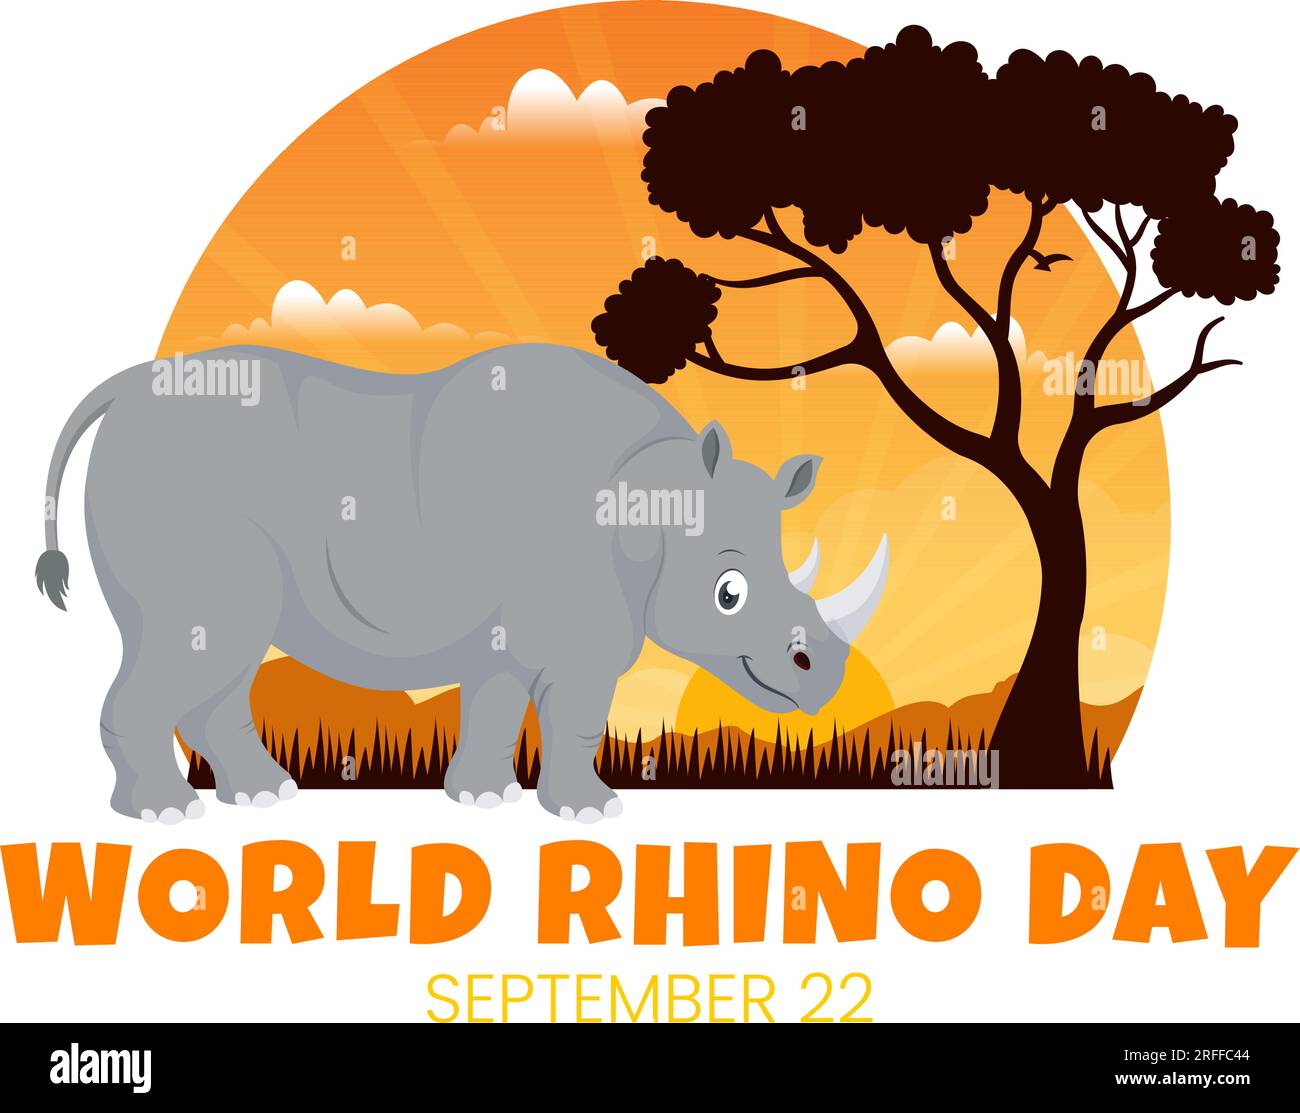 World Rhino Day Vector Illustration am 22. September für Liebhaber und Verteidiger von Nashörnern oder Tierschutz in flachen, handgezeichneten Cartoon-Vorlagen Stock Vektor